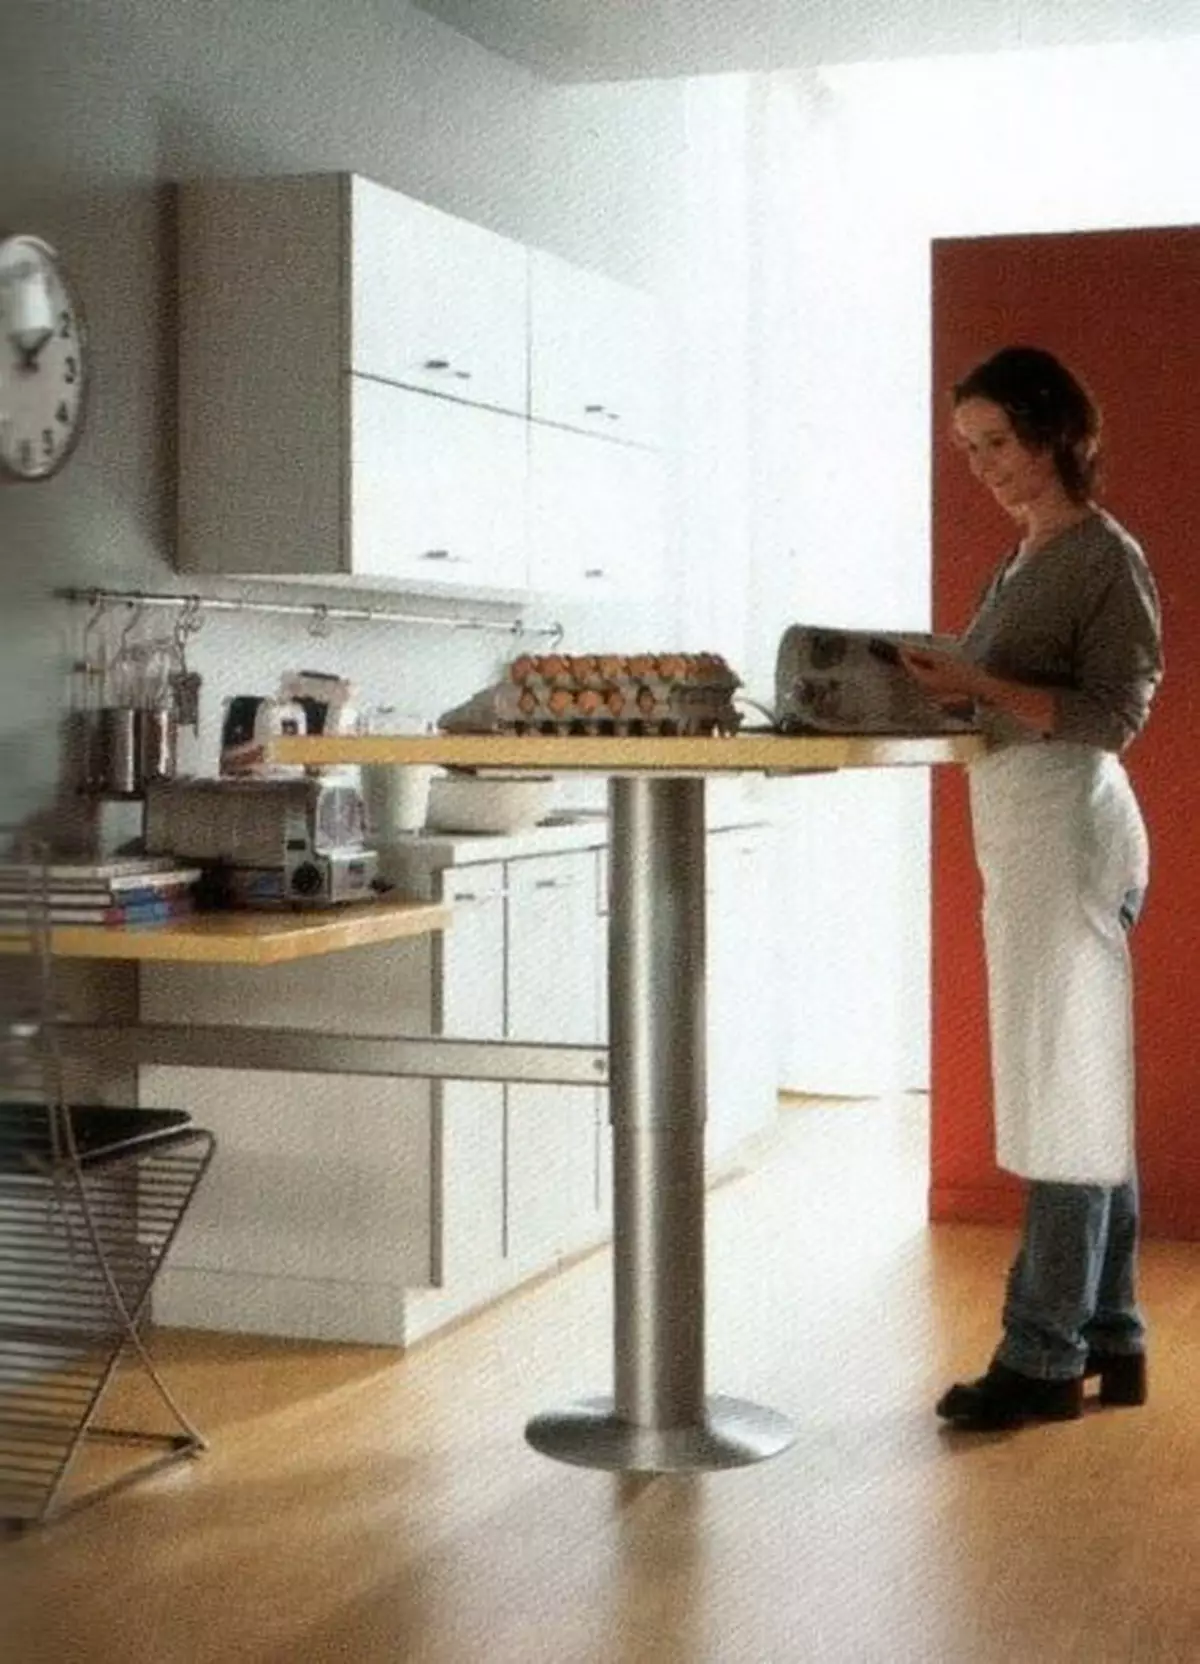 باورچی خانے کے کارکنوں کی میزیں (49 فوٹو): ہیڈلائرز سے باورچی خانے کے لئے موبائل کاٹنے کی میزیں، پناہ گاہوں اور دیگر اختیارات کے ساتھ پیداوار پیشہ ورانہ میزیں 24846_31